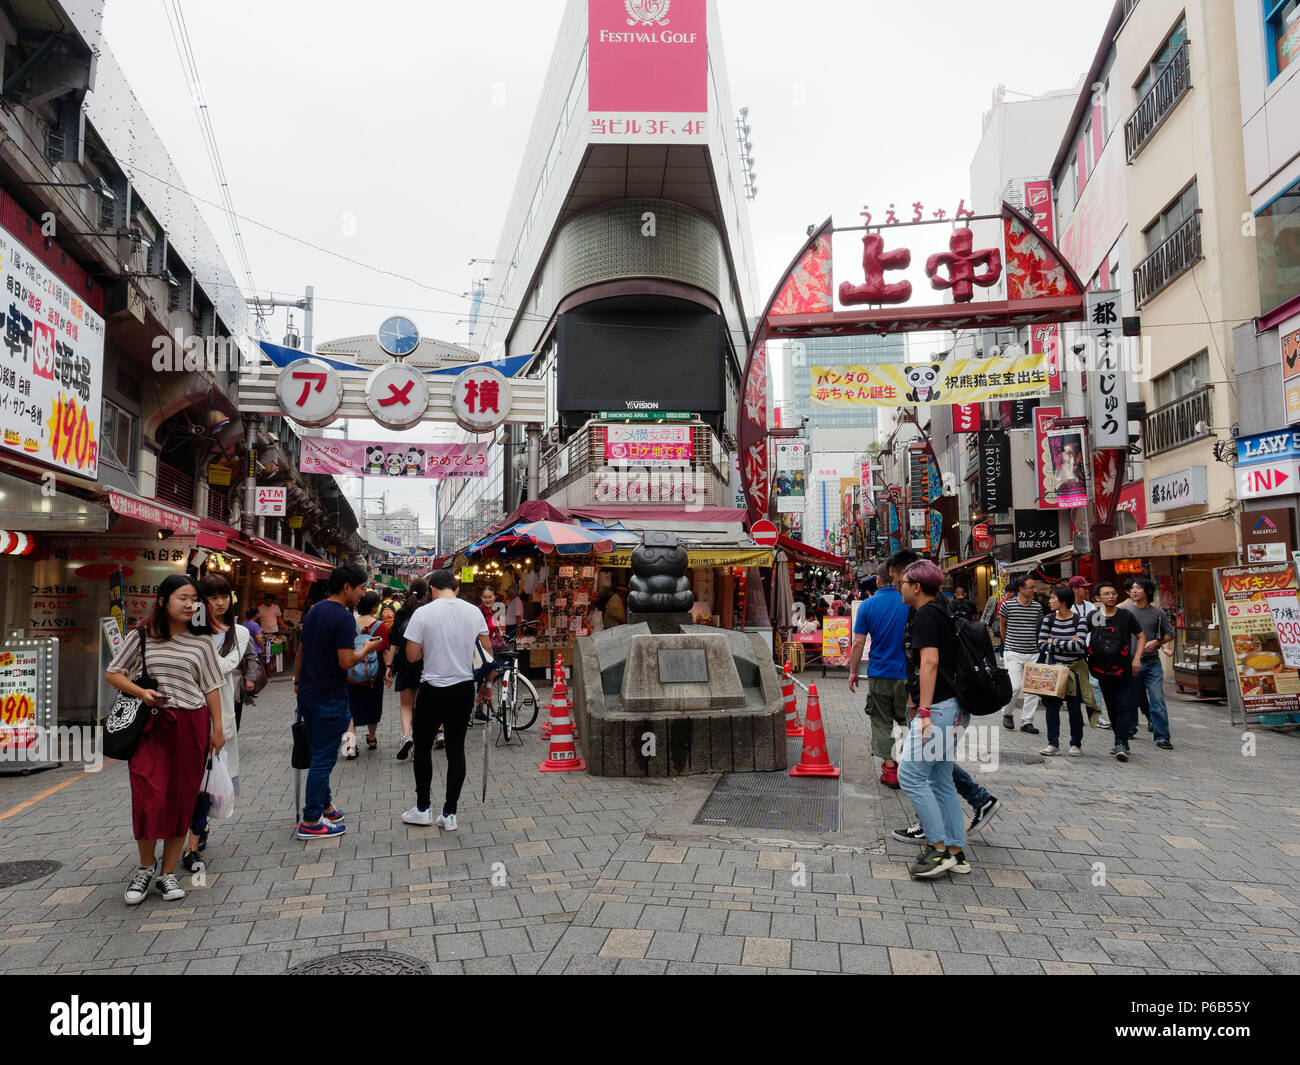 TOKYO, Giappone - 28 settembre 2017: Ameyoko , una trafficata strada di mercato lungo la Yamanote binari ferroviari tra Okachimachi e stazioni di Ueno, è una delle principali mete turistiche destinazioni per lo shopping a Tokyo Foto Stock